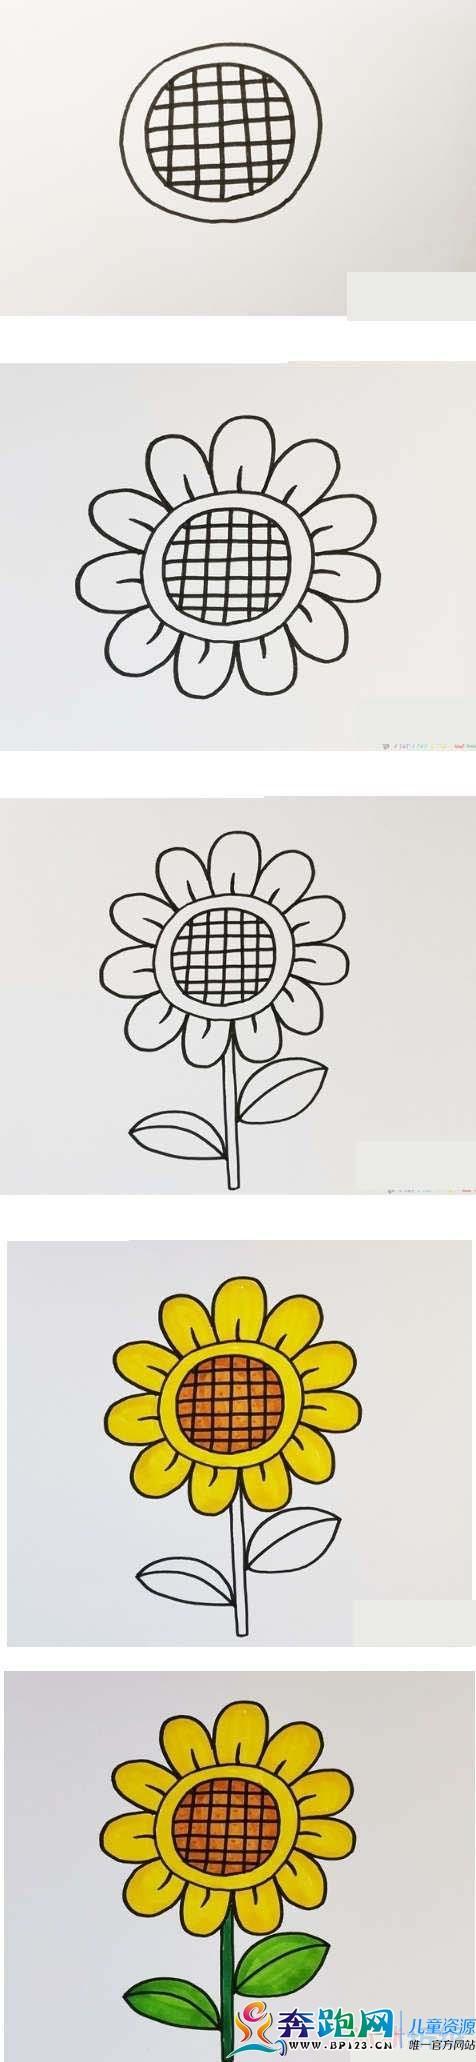 幼儿简笔画画向日葵